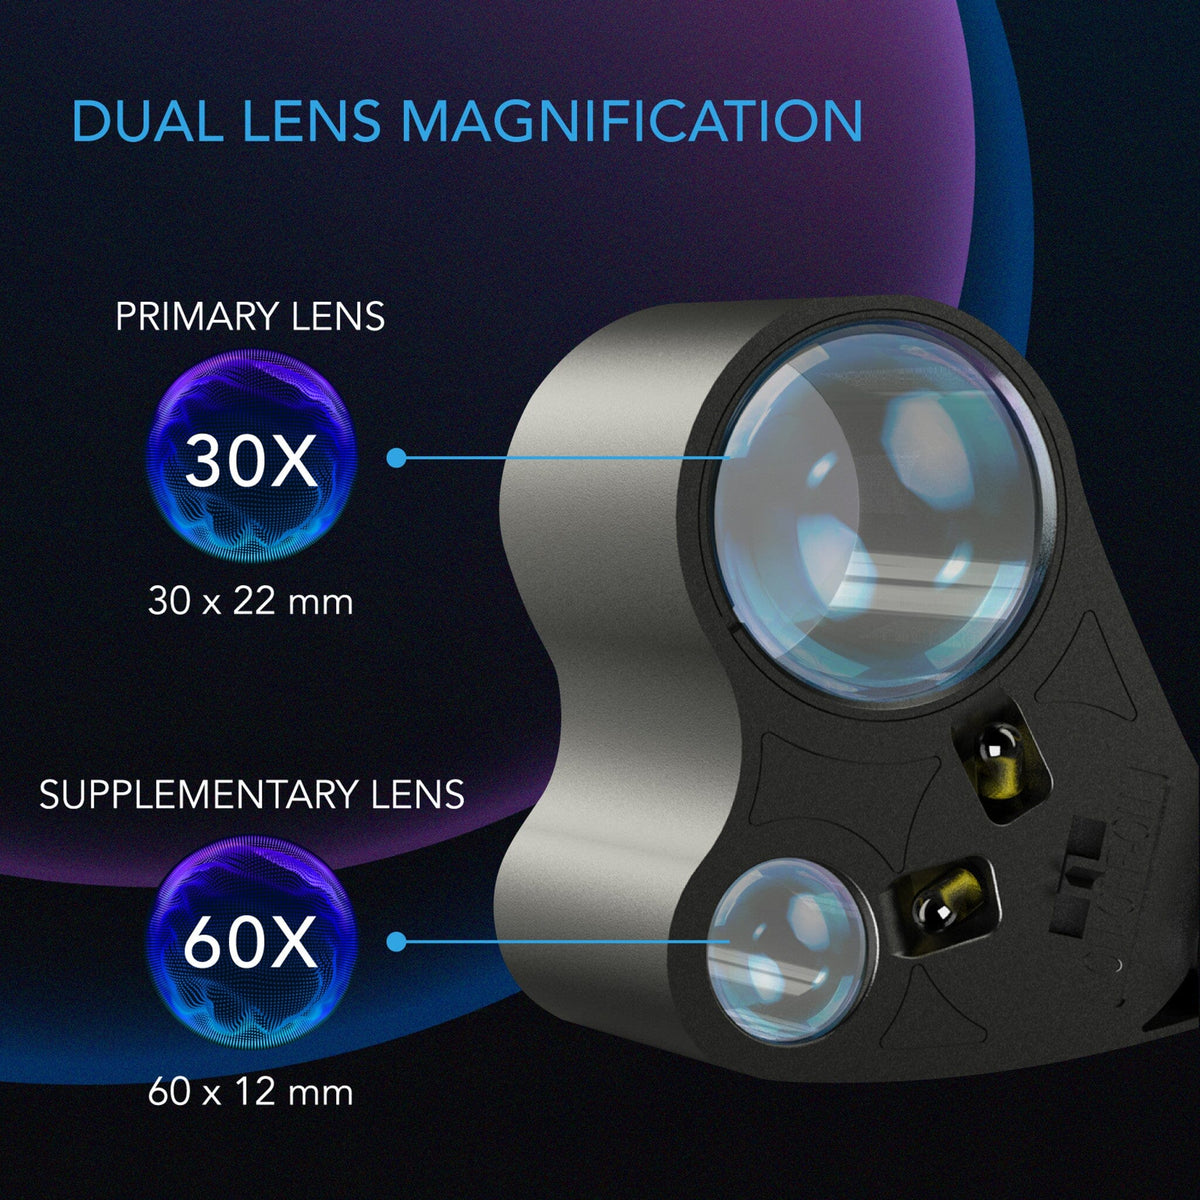 Dual lens magnification